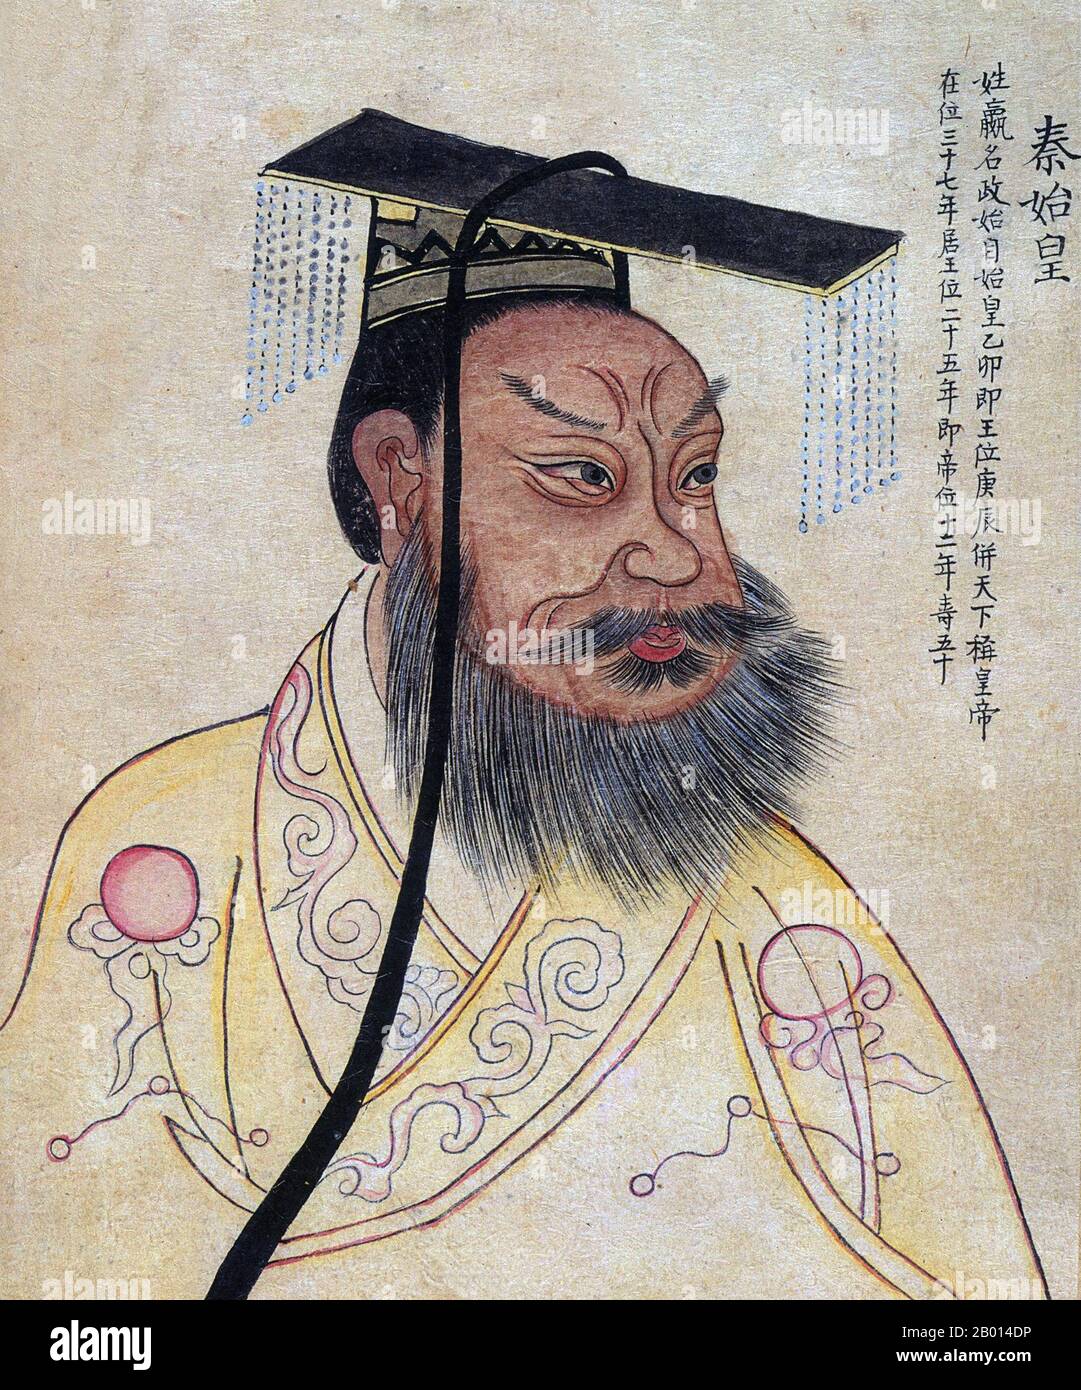 Chine : Qin Shi Huang/Qin Shi Huangdi (259-210 BCE), premier empereur d'une Chine unifiée (r.246-221 BCE). Illustration de la feuille d'album, 19e siècle. Qin Shi Huang, nom personnel Ying Zheng, a été roi de l'État chinois de Qin de 246 à 221 BCE pendant la période des États en guerre. Il devint le premier empereur d'une Chine unifiée en 221 BCE, et régna jusqu'à sa mort en 210 BCE à l'âge de 49 ans. Se coiffant du « premier empereur » après l'unification de la Chine, Qin Shi Huang est une figure pivot de l'histoire chinoise, inaugurant près de deux millénaires de régime impérial. Banque D'Images